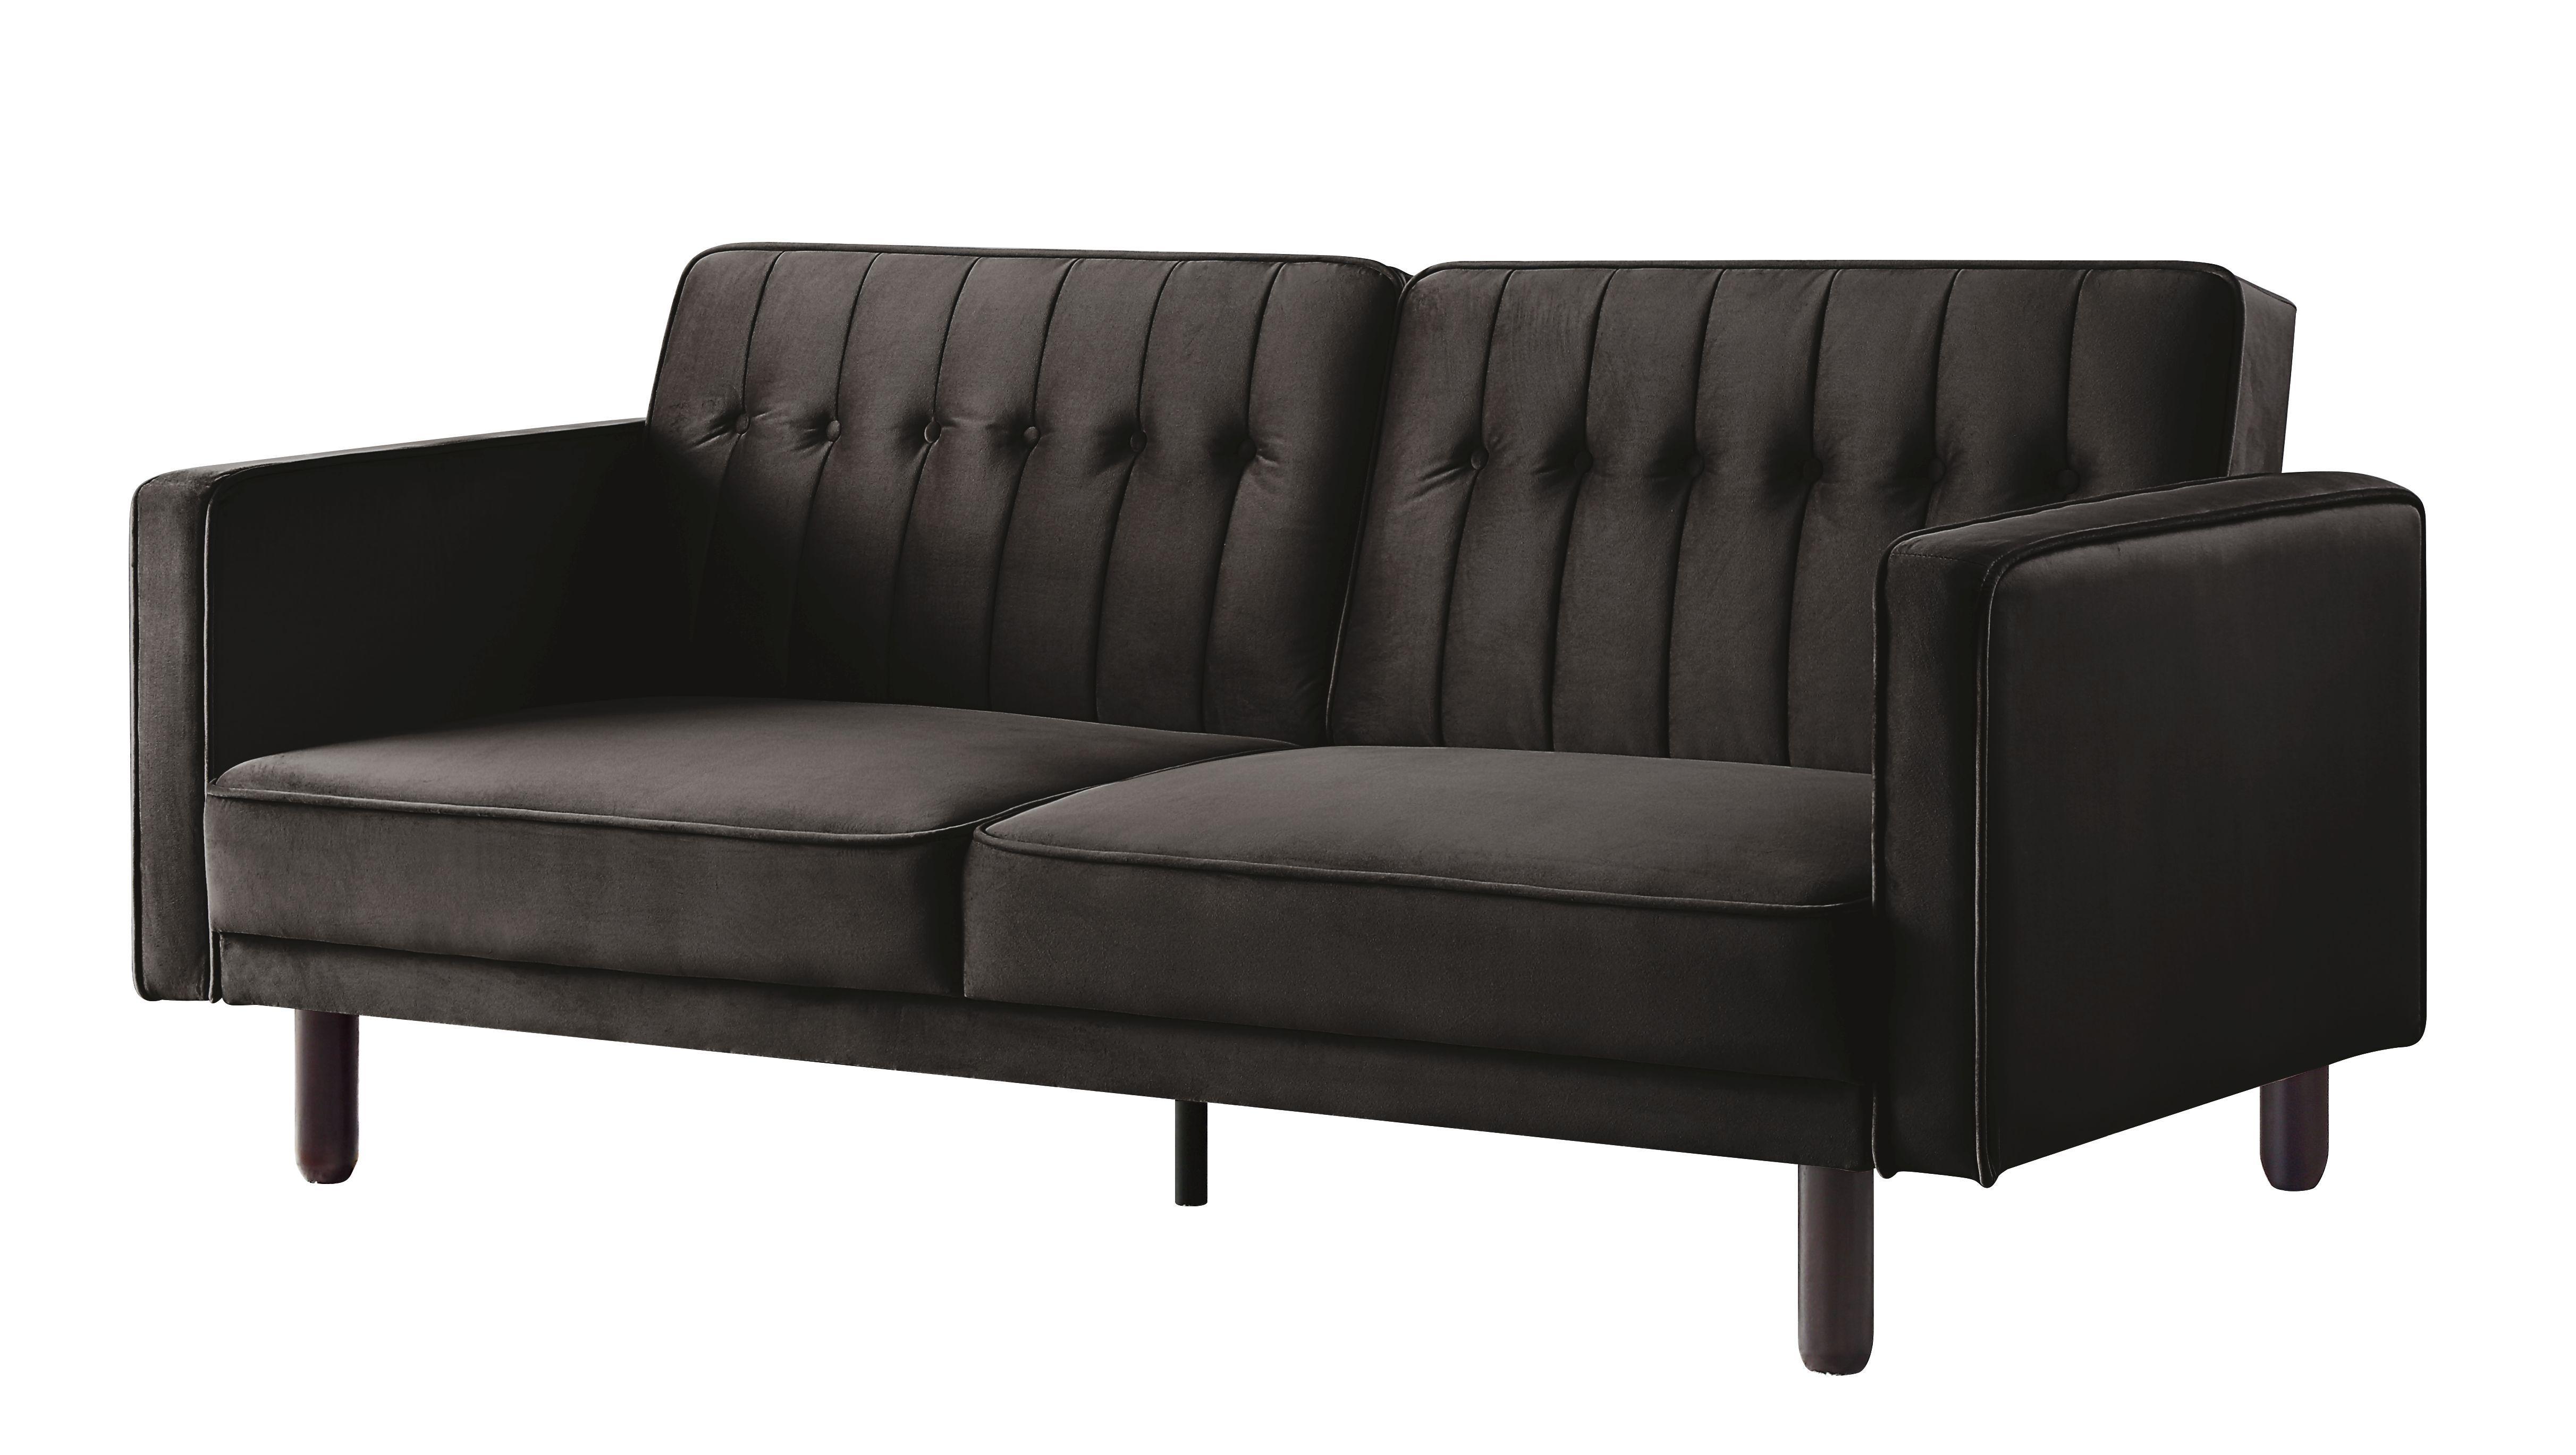 Acme Furniture Qinven Futon sofa